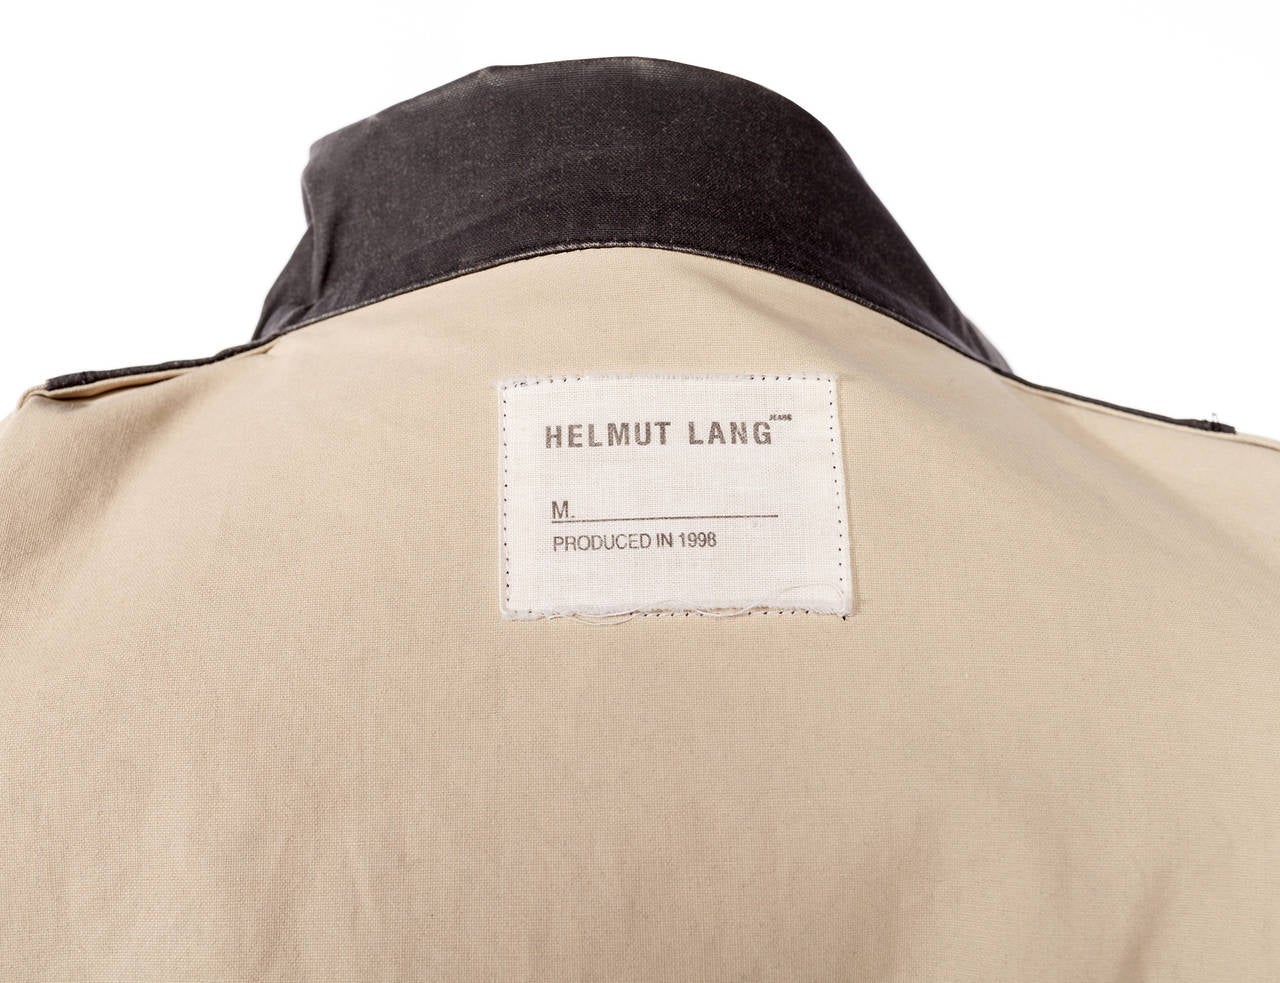 Vintage Helmut Lang 1998 jacket in grey resin cotton 2